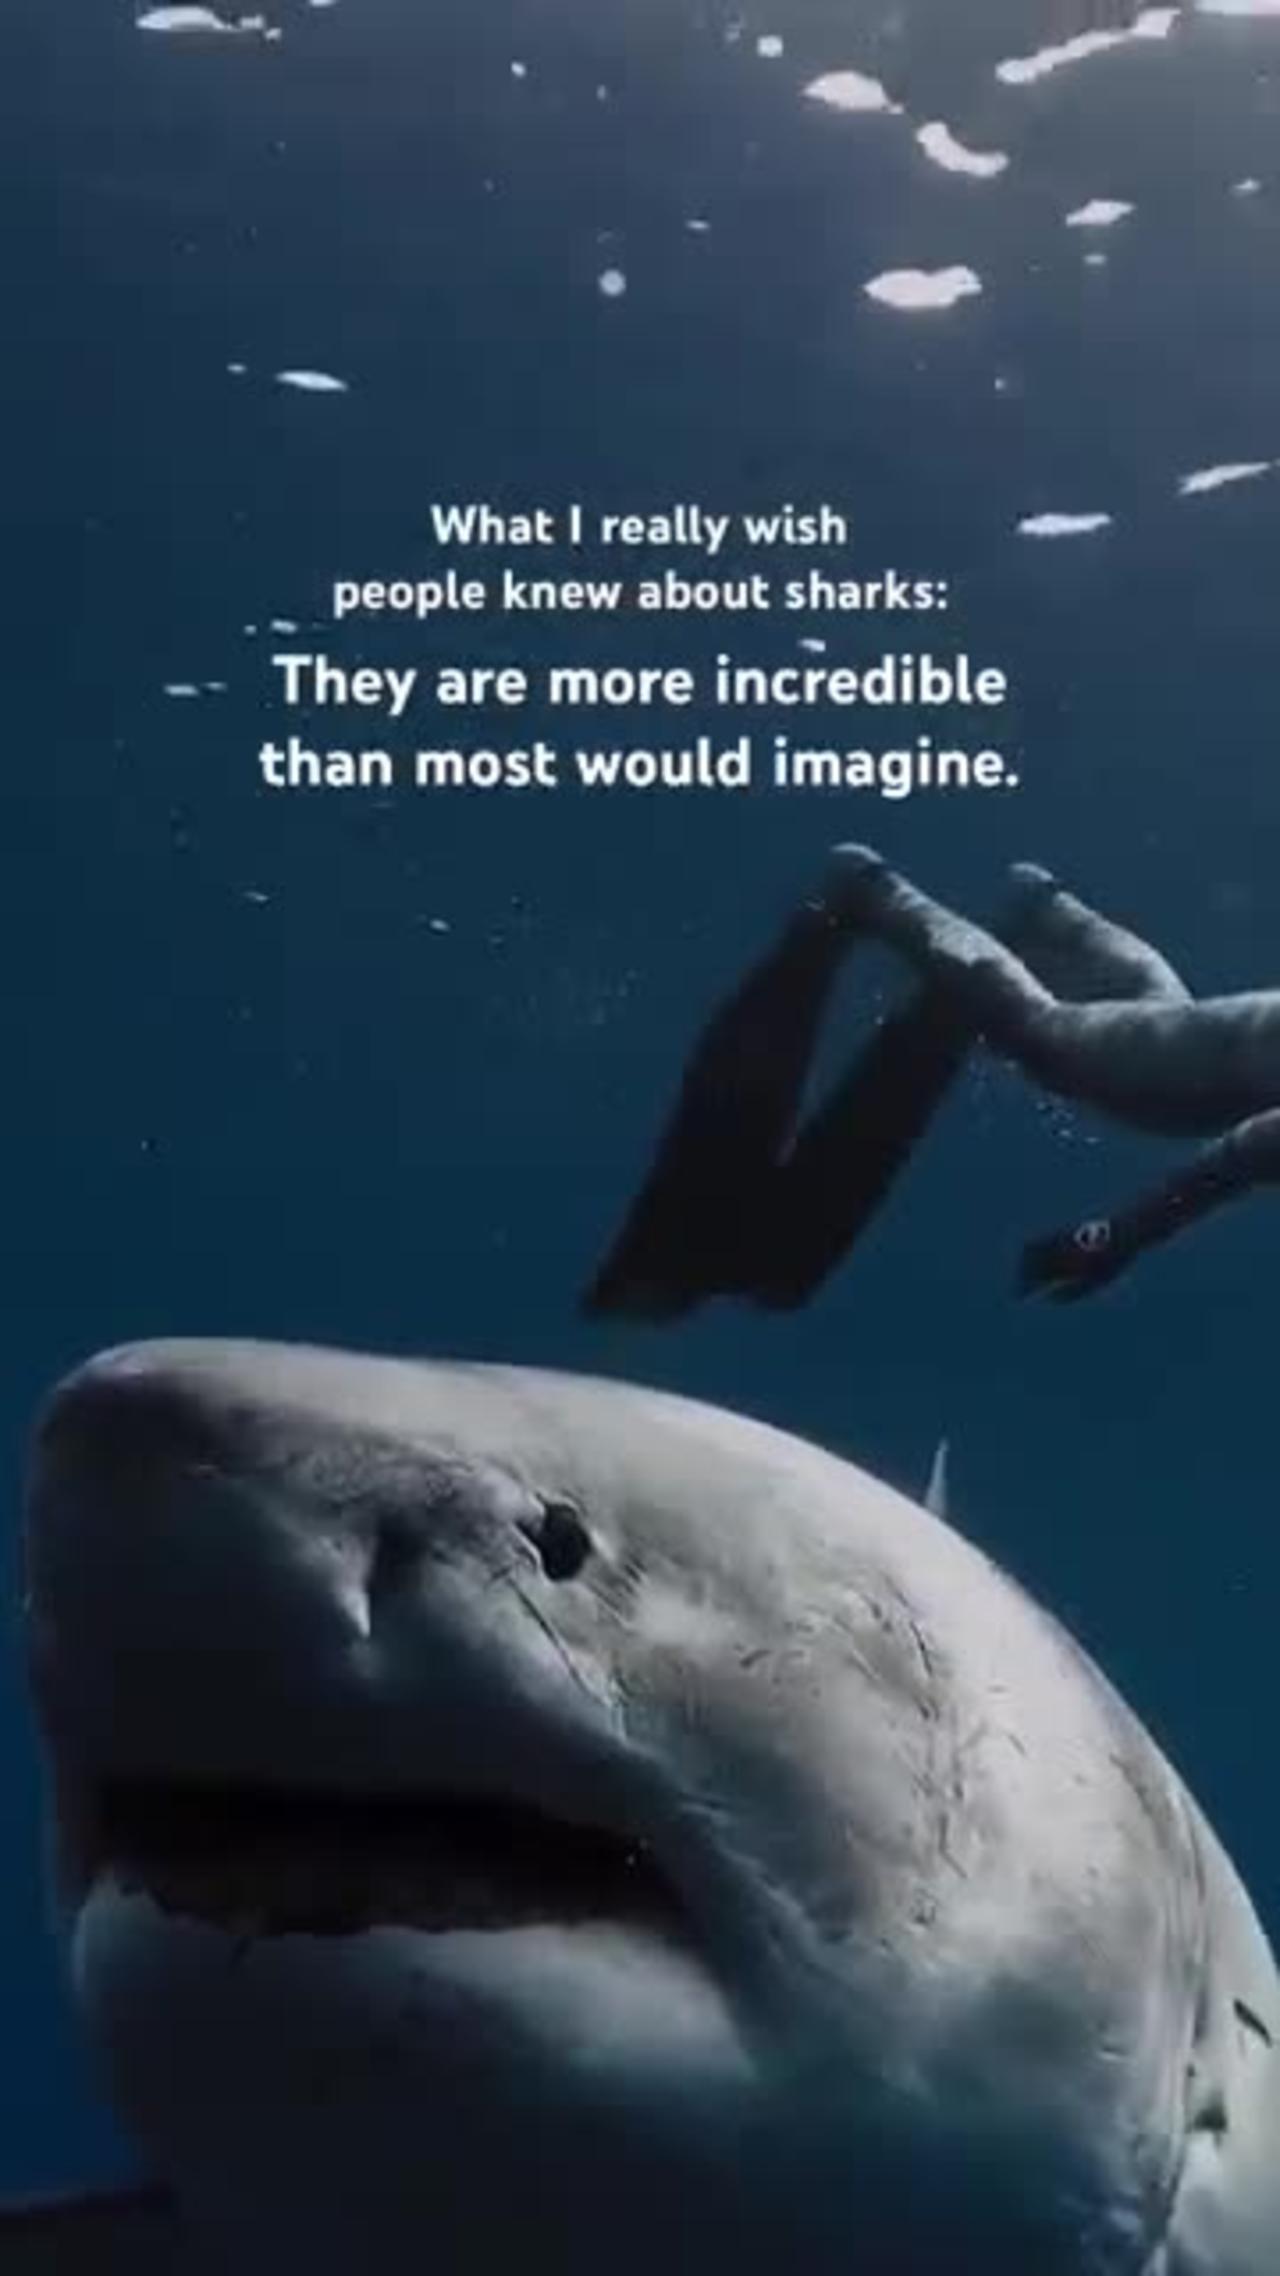 Shark video